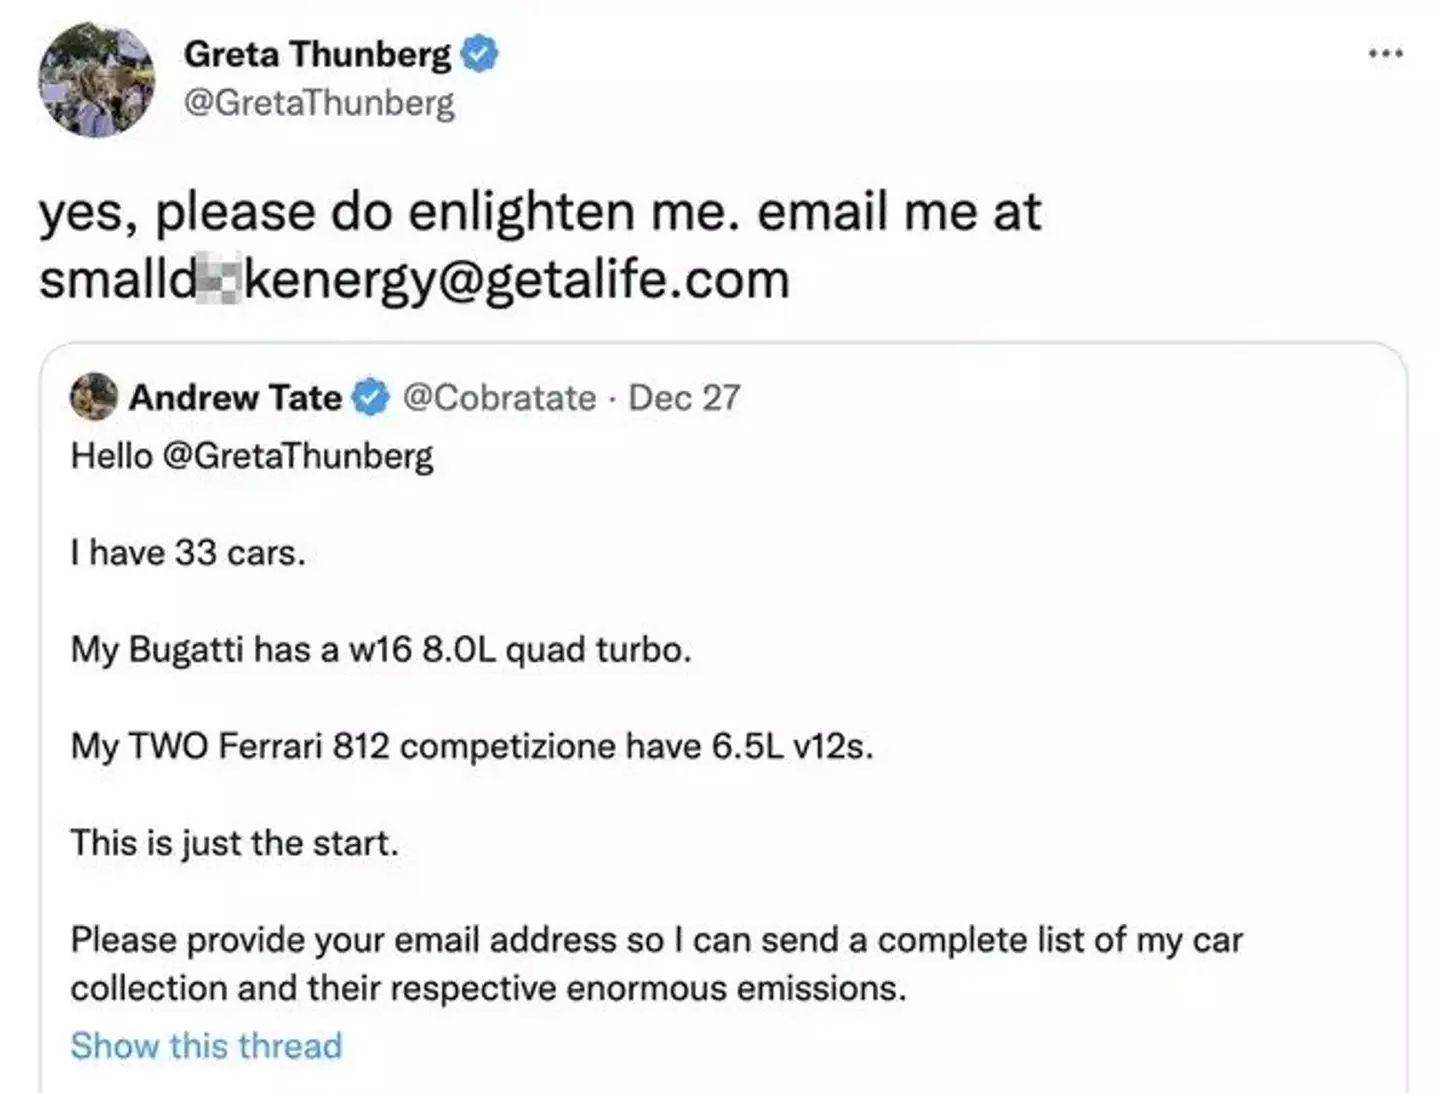 Greta Thunberg's roasting of Andrew Tate has made Twitter history.